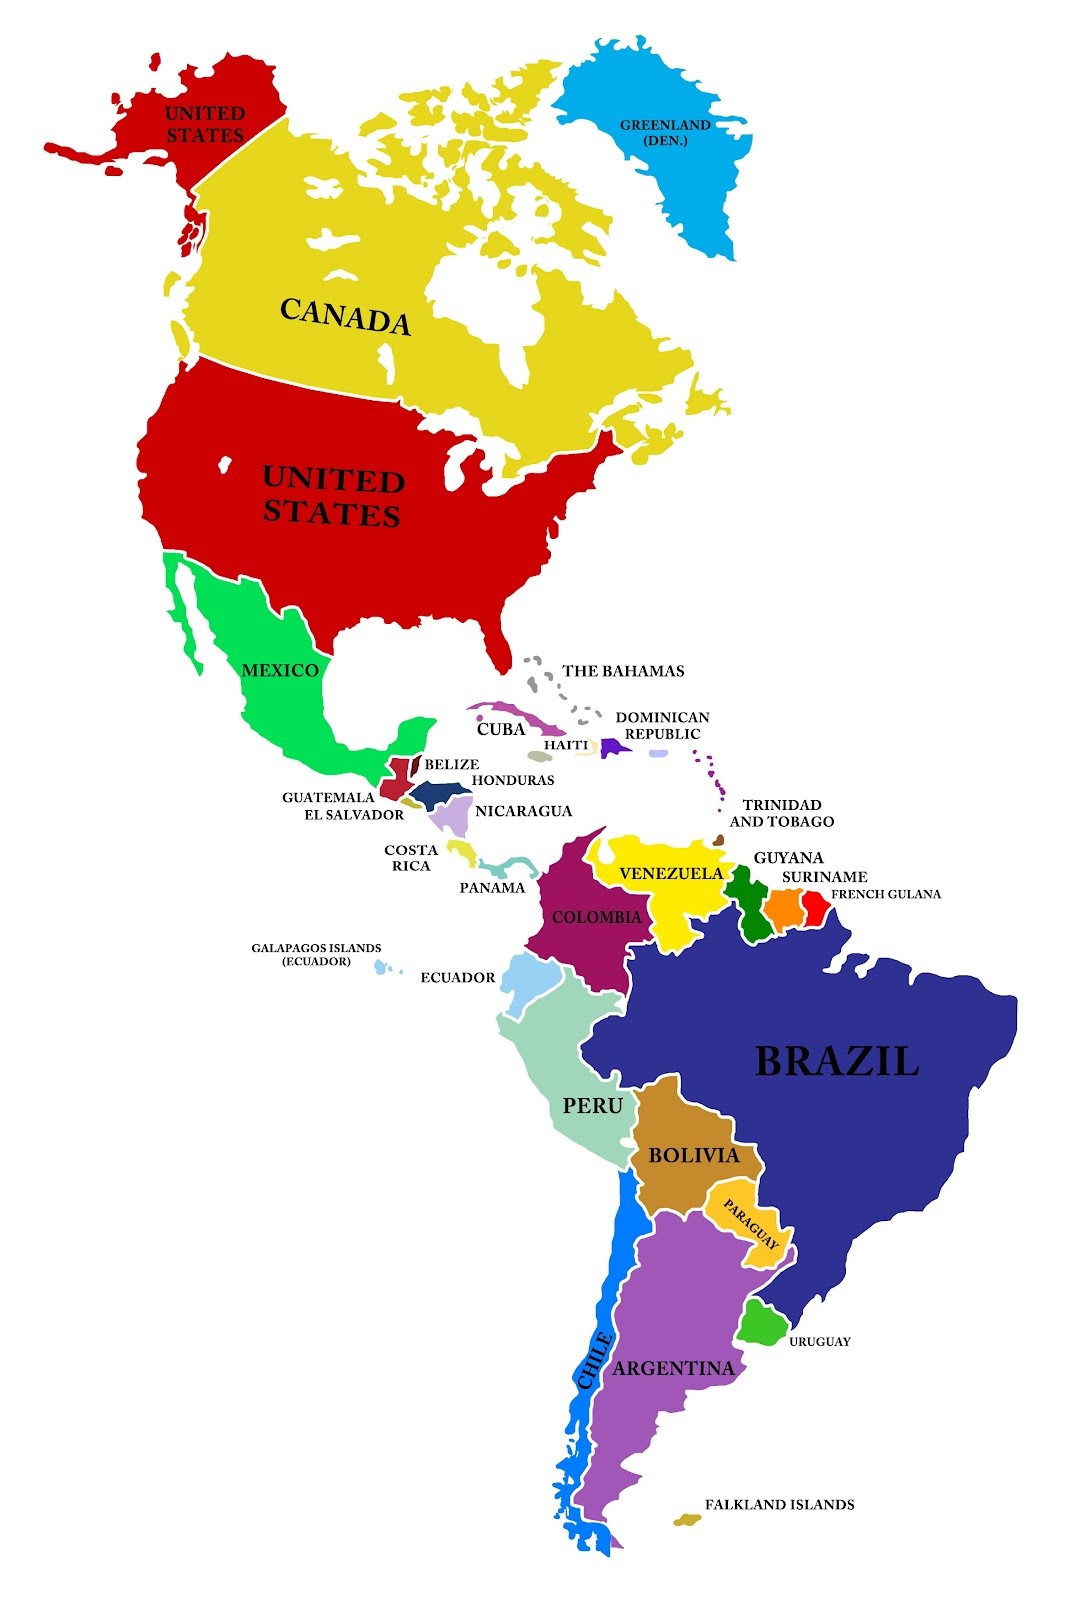 Banco de Imágenes Gratis: Mapa de América (Incluye América del Norte